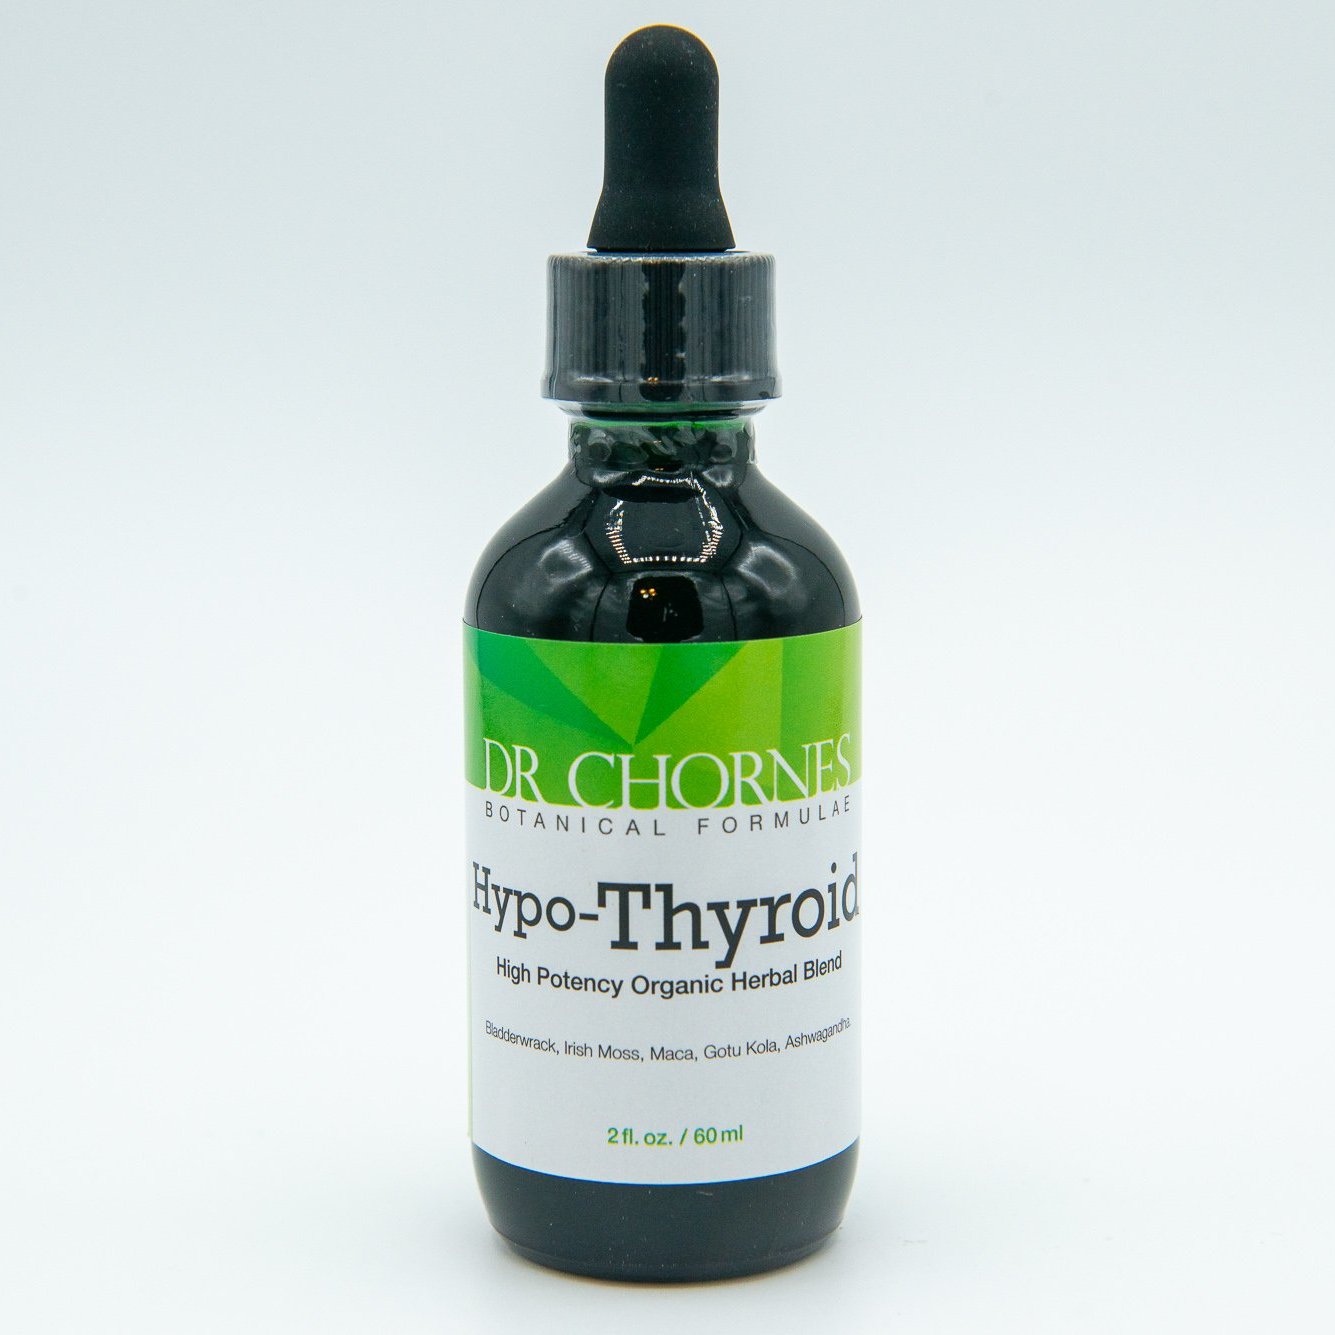 Hypo-Thyroid